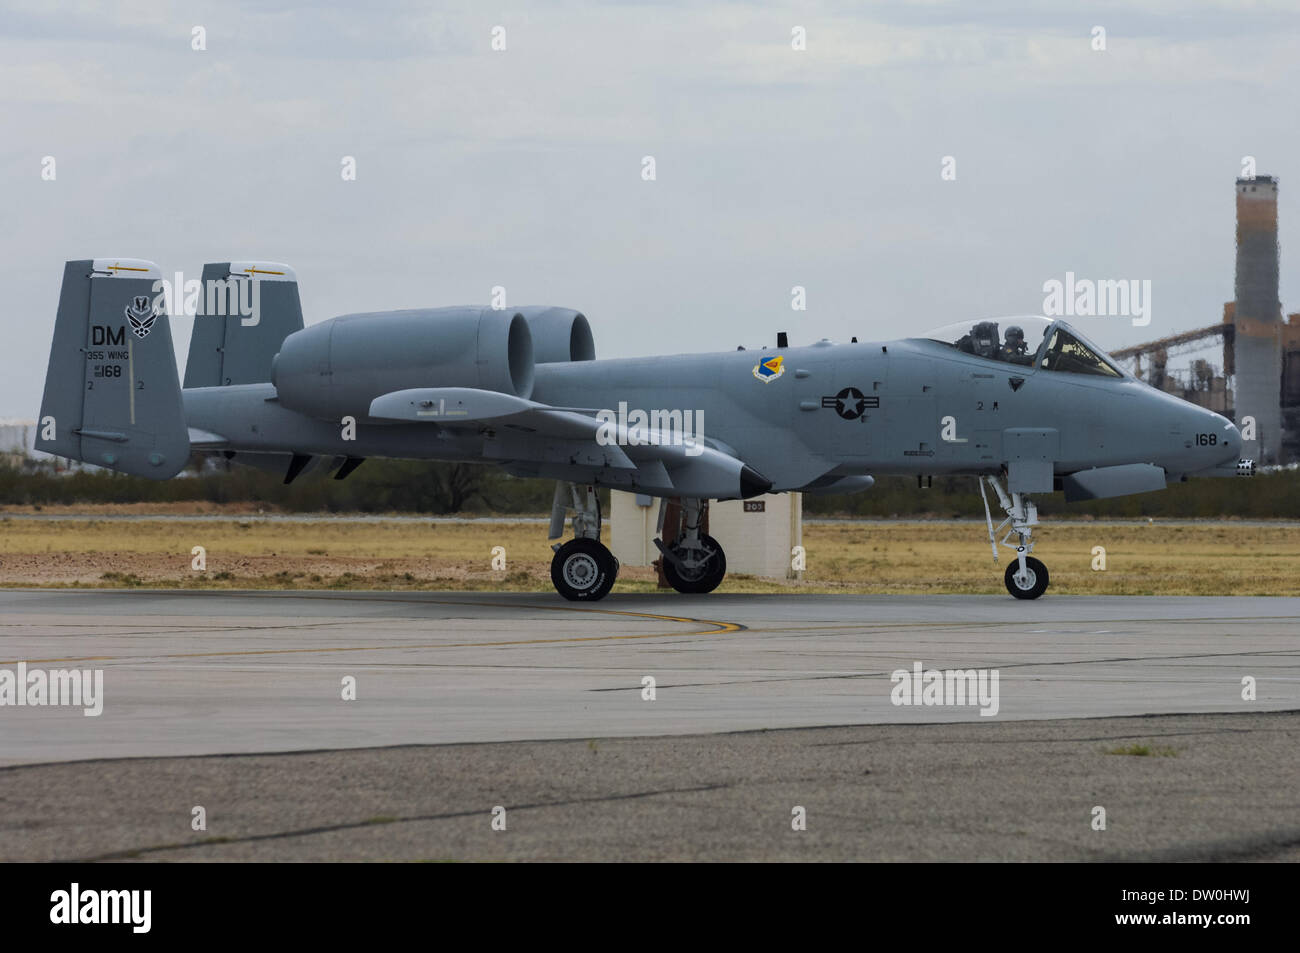 Marzo 17, 2007 - Tucson, Arizona, Stati Uniti d'America - Un-10 taxi aereo sulla pista di Davis-Monthan AFB a Tucson, in Arizona in questo 2007 foto d'archivio. Davis-Monthan è casa per l'ala 355a, che supporta la A-10. Il Pentagono ha annunciato ieri i piani di ritiro A-10 come un costo a misura di taglio per preparare per eventuale consegna del F-35 multipurpose fighter. L'A-10 è servito dal ritardo nella guerra del Vietnam e contemporanei di guerra in Afghanistan e in Iraq. Il velivolo è generalmente lodato per i piloti e gli equipaggi di servizio per la sua capacità di sopravvivenza e di prestazioni. (Credito Imag Foto Stock